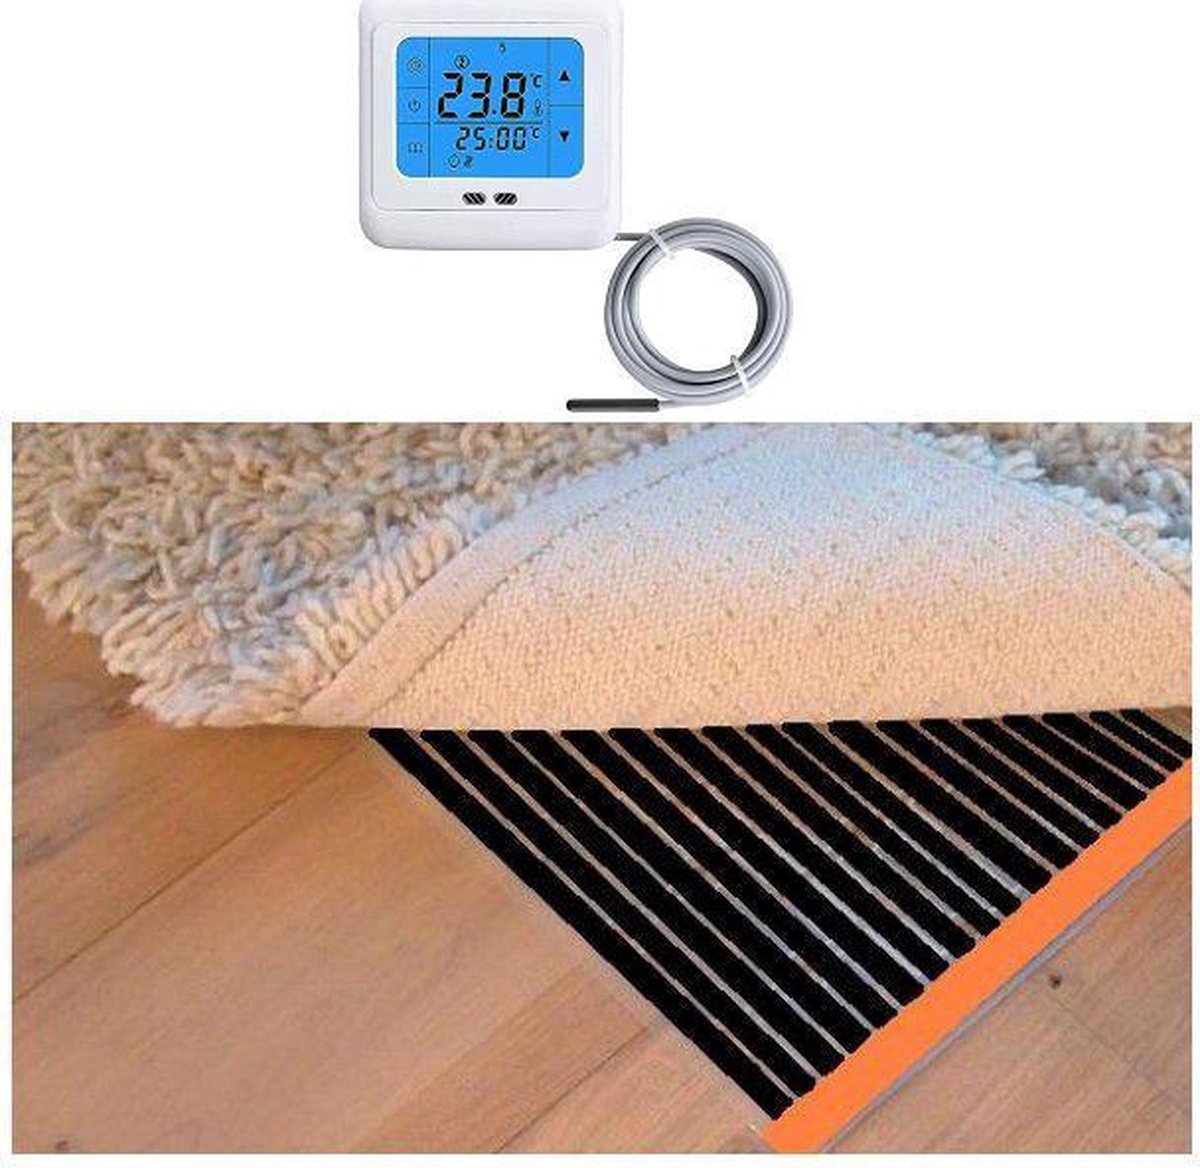 Woonkamer verwarmingsfolie infrarood folie voor vloerbedekking, tapijten vloerkleden elektrisch met TH 89 thermostaat 200 cm x 650 cm (100W/m2)